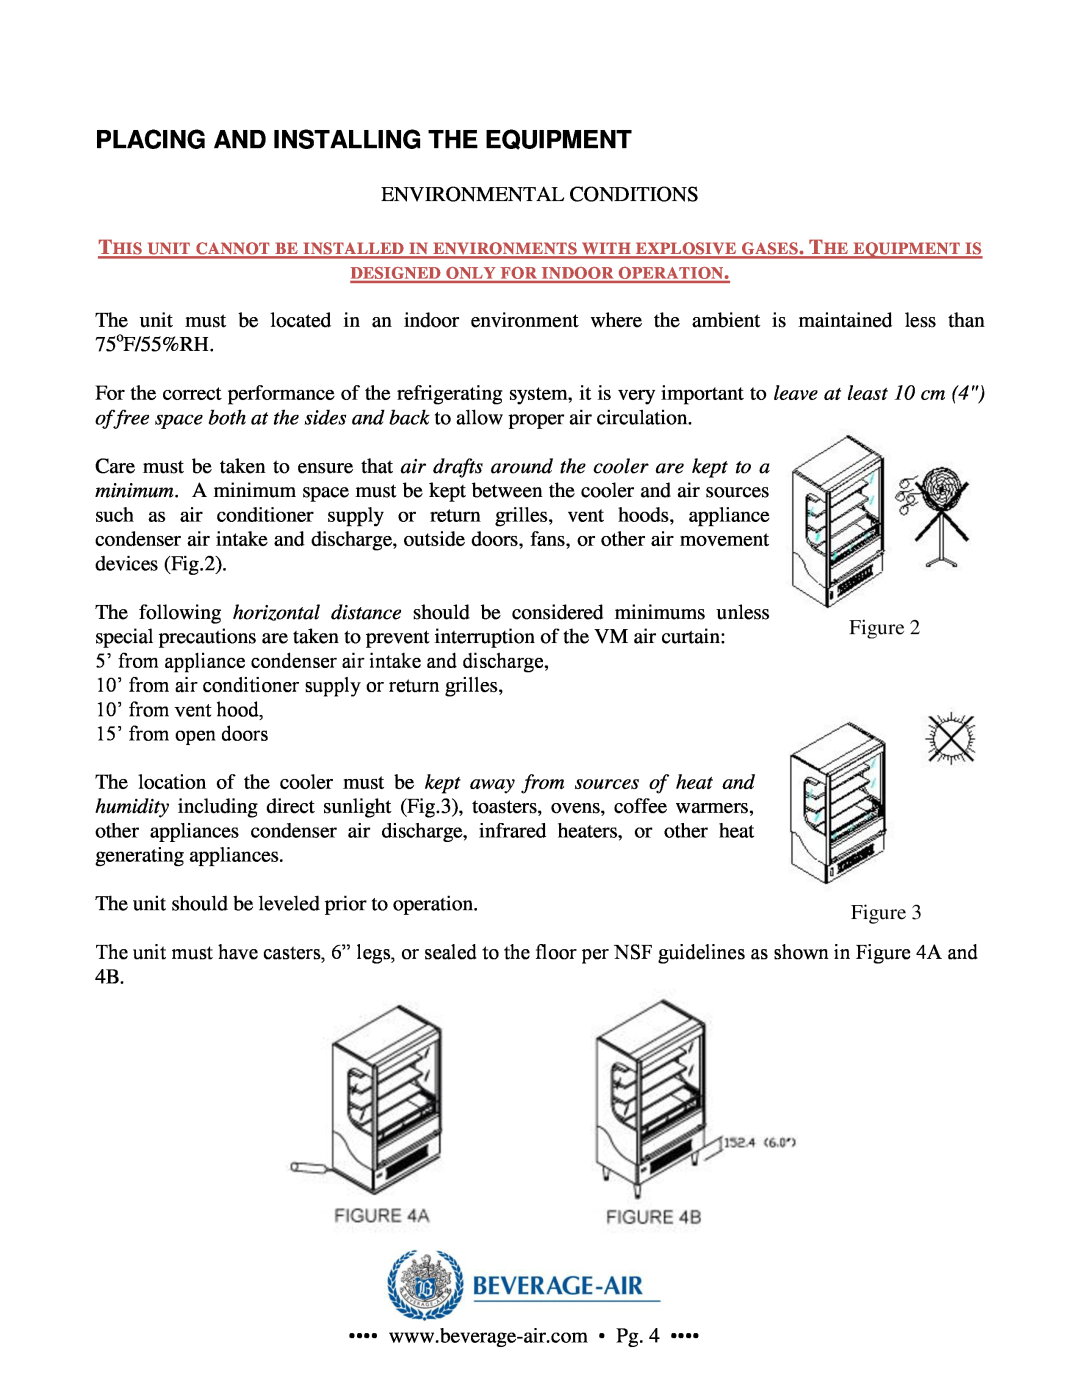 Beverage-Air VM2, VM18, VM7, VM12 operation manual Placing And Installing The Equipment 